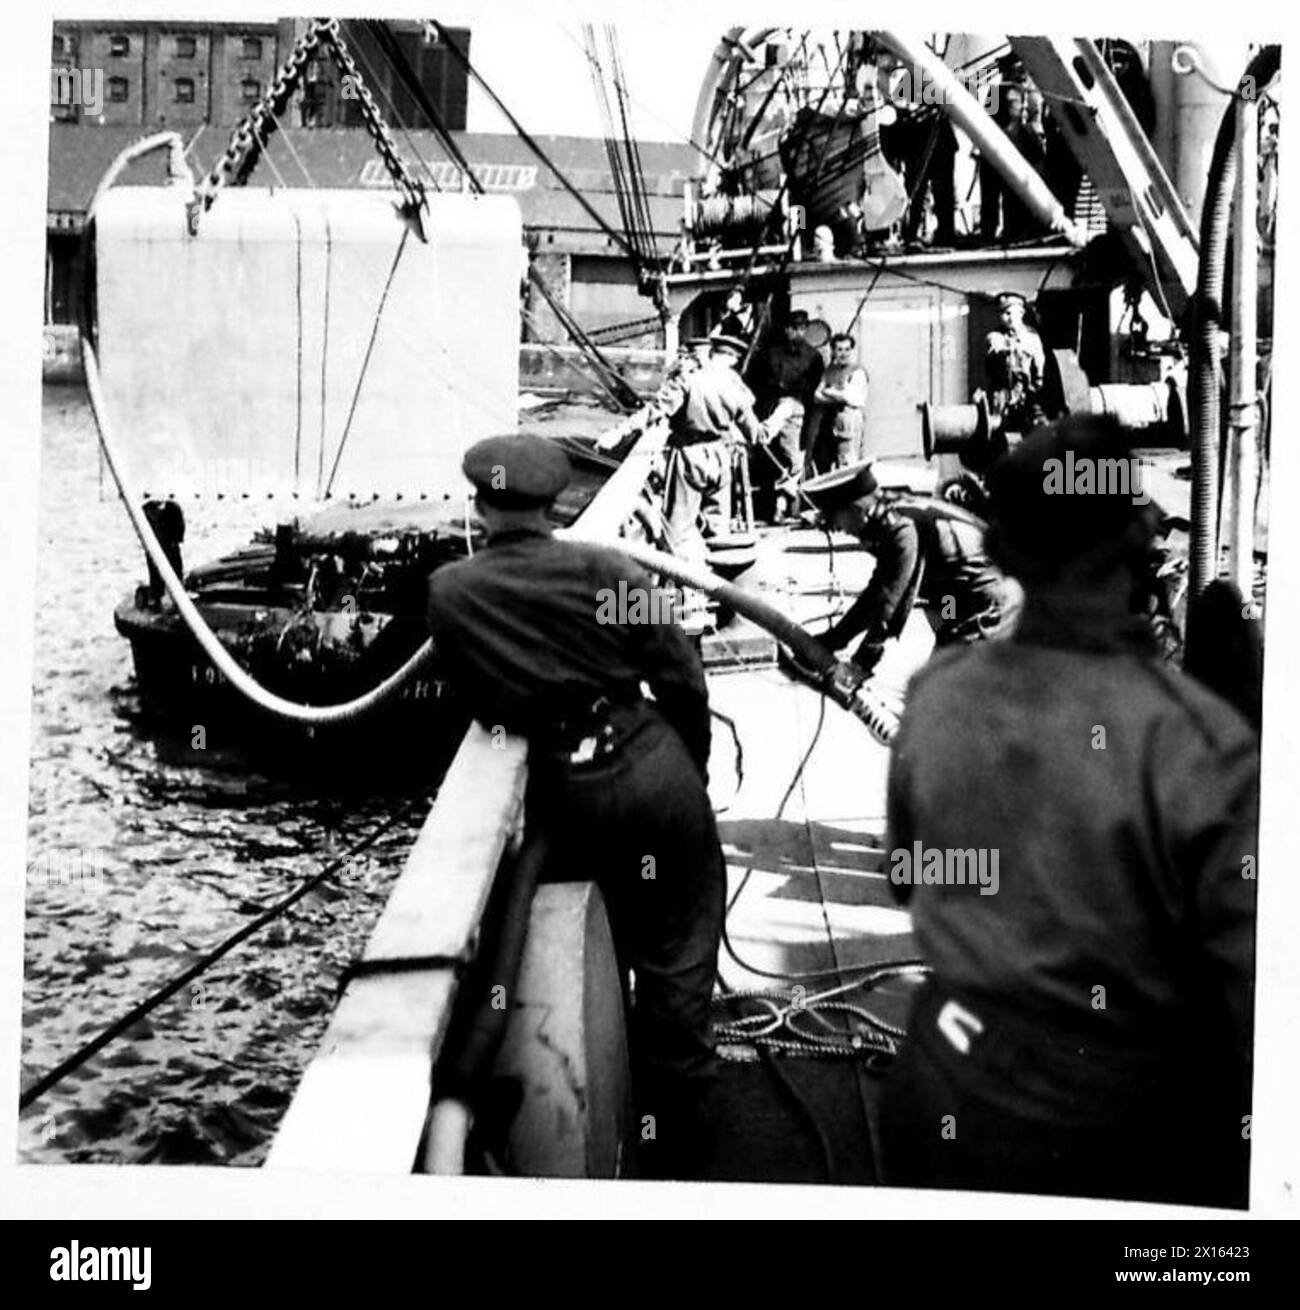 REPARATURSCHIFF MIT KÖNIGLICHEN INGENIEUREN - die Tauchglocke wird von Männern der Royal Engineers British Army über die Schiffsseite gesenkt Stockfoto